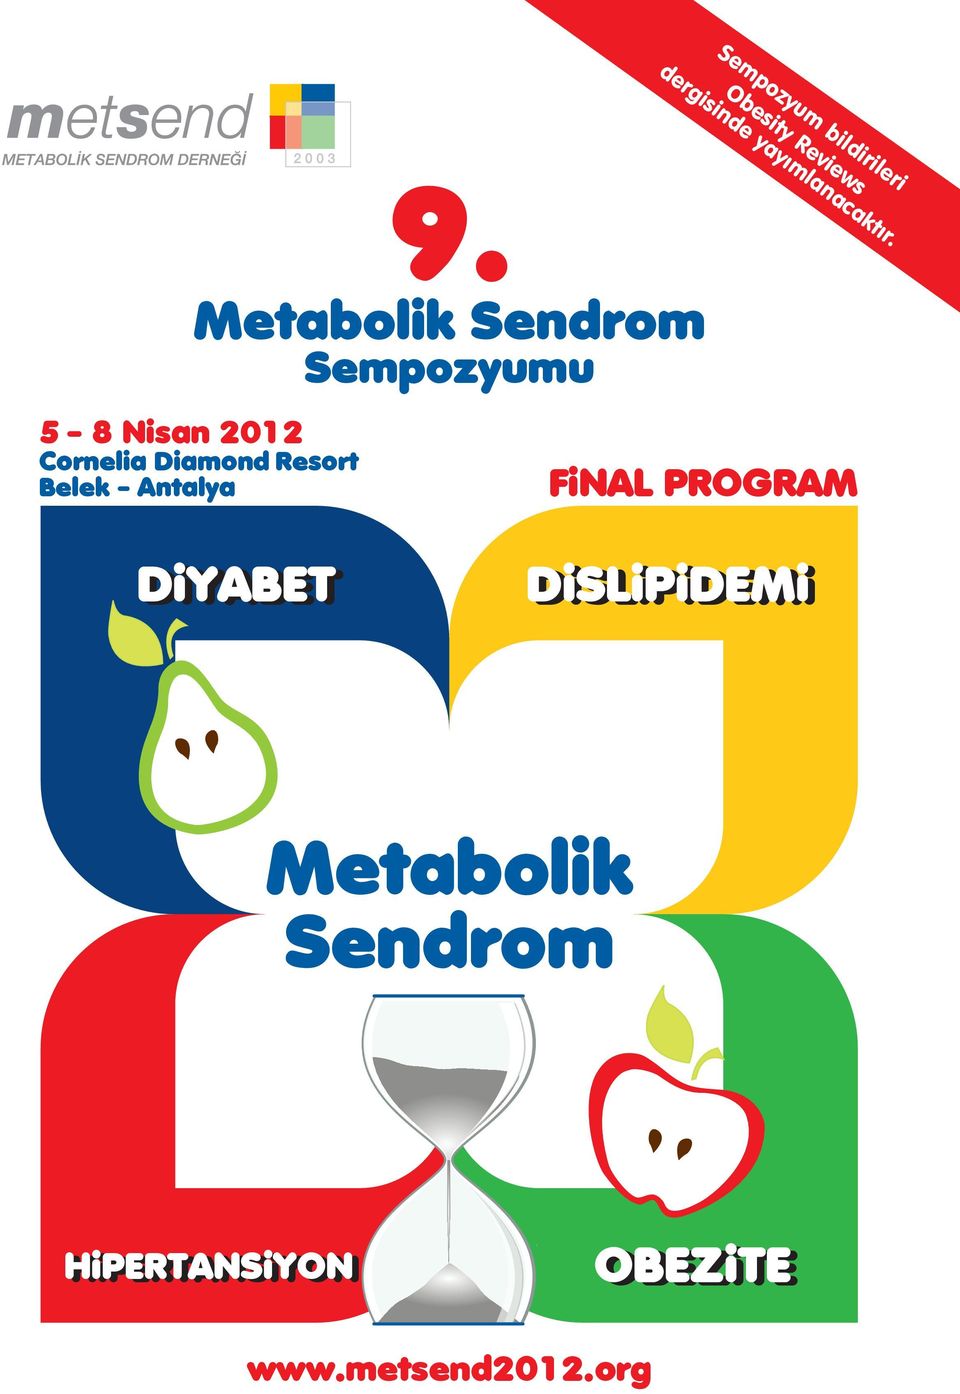 Metabolik Sendrom Sempozyumu 5-8 Nisan 2012 Cornelia Diamond